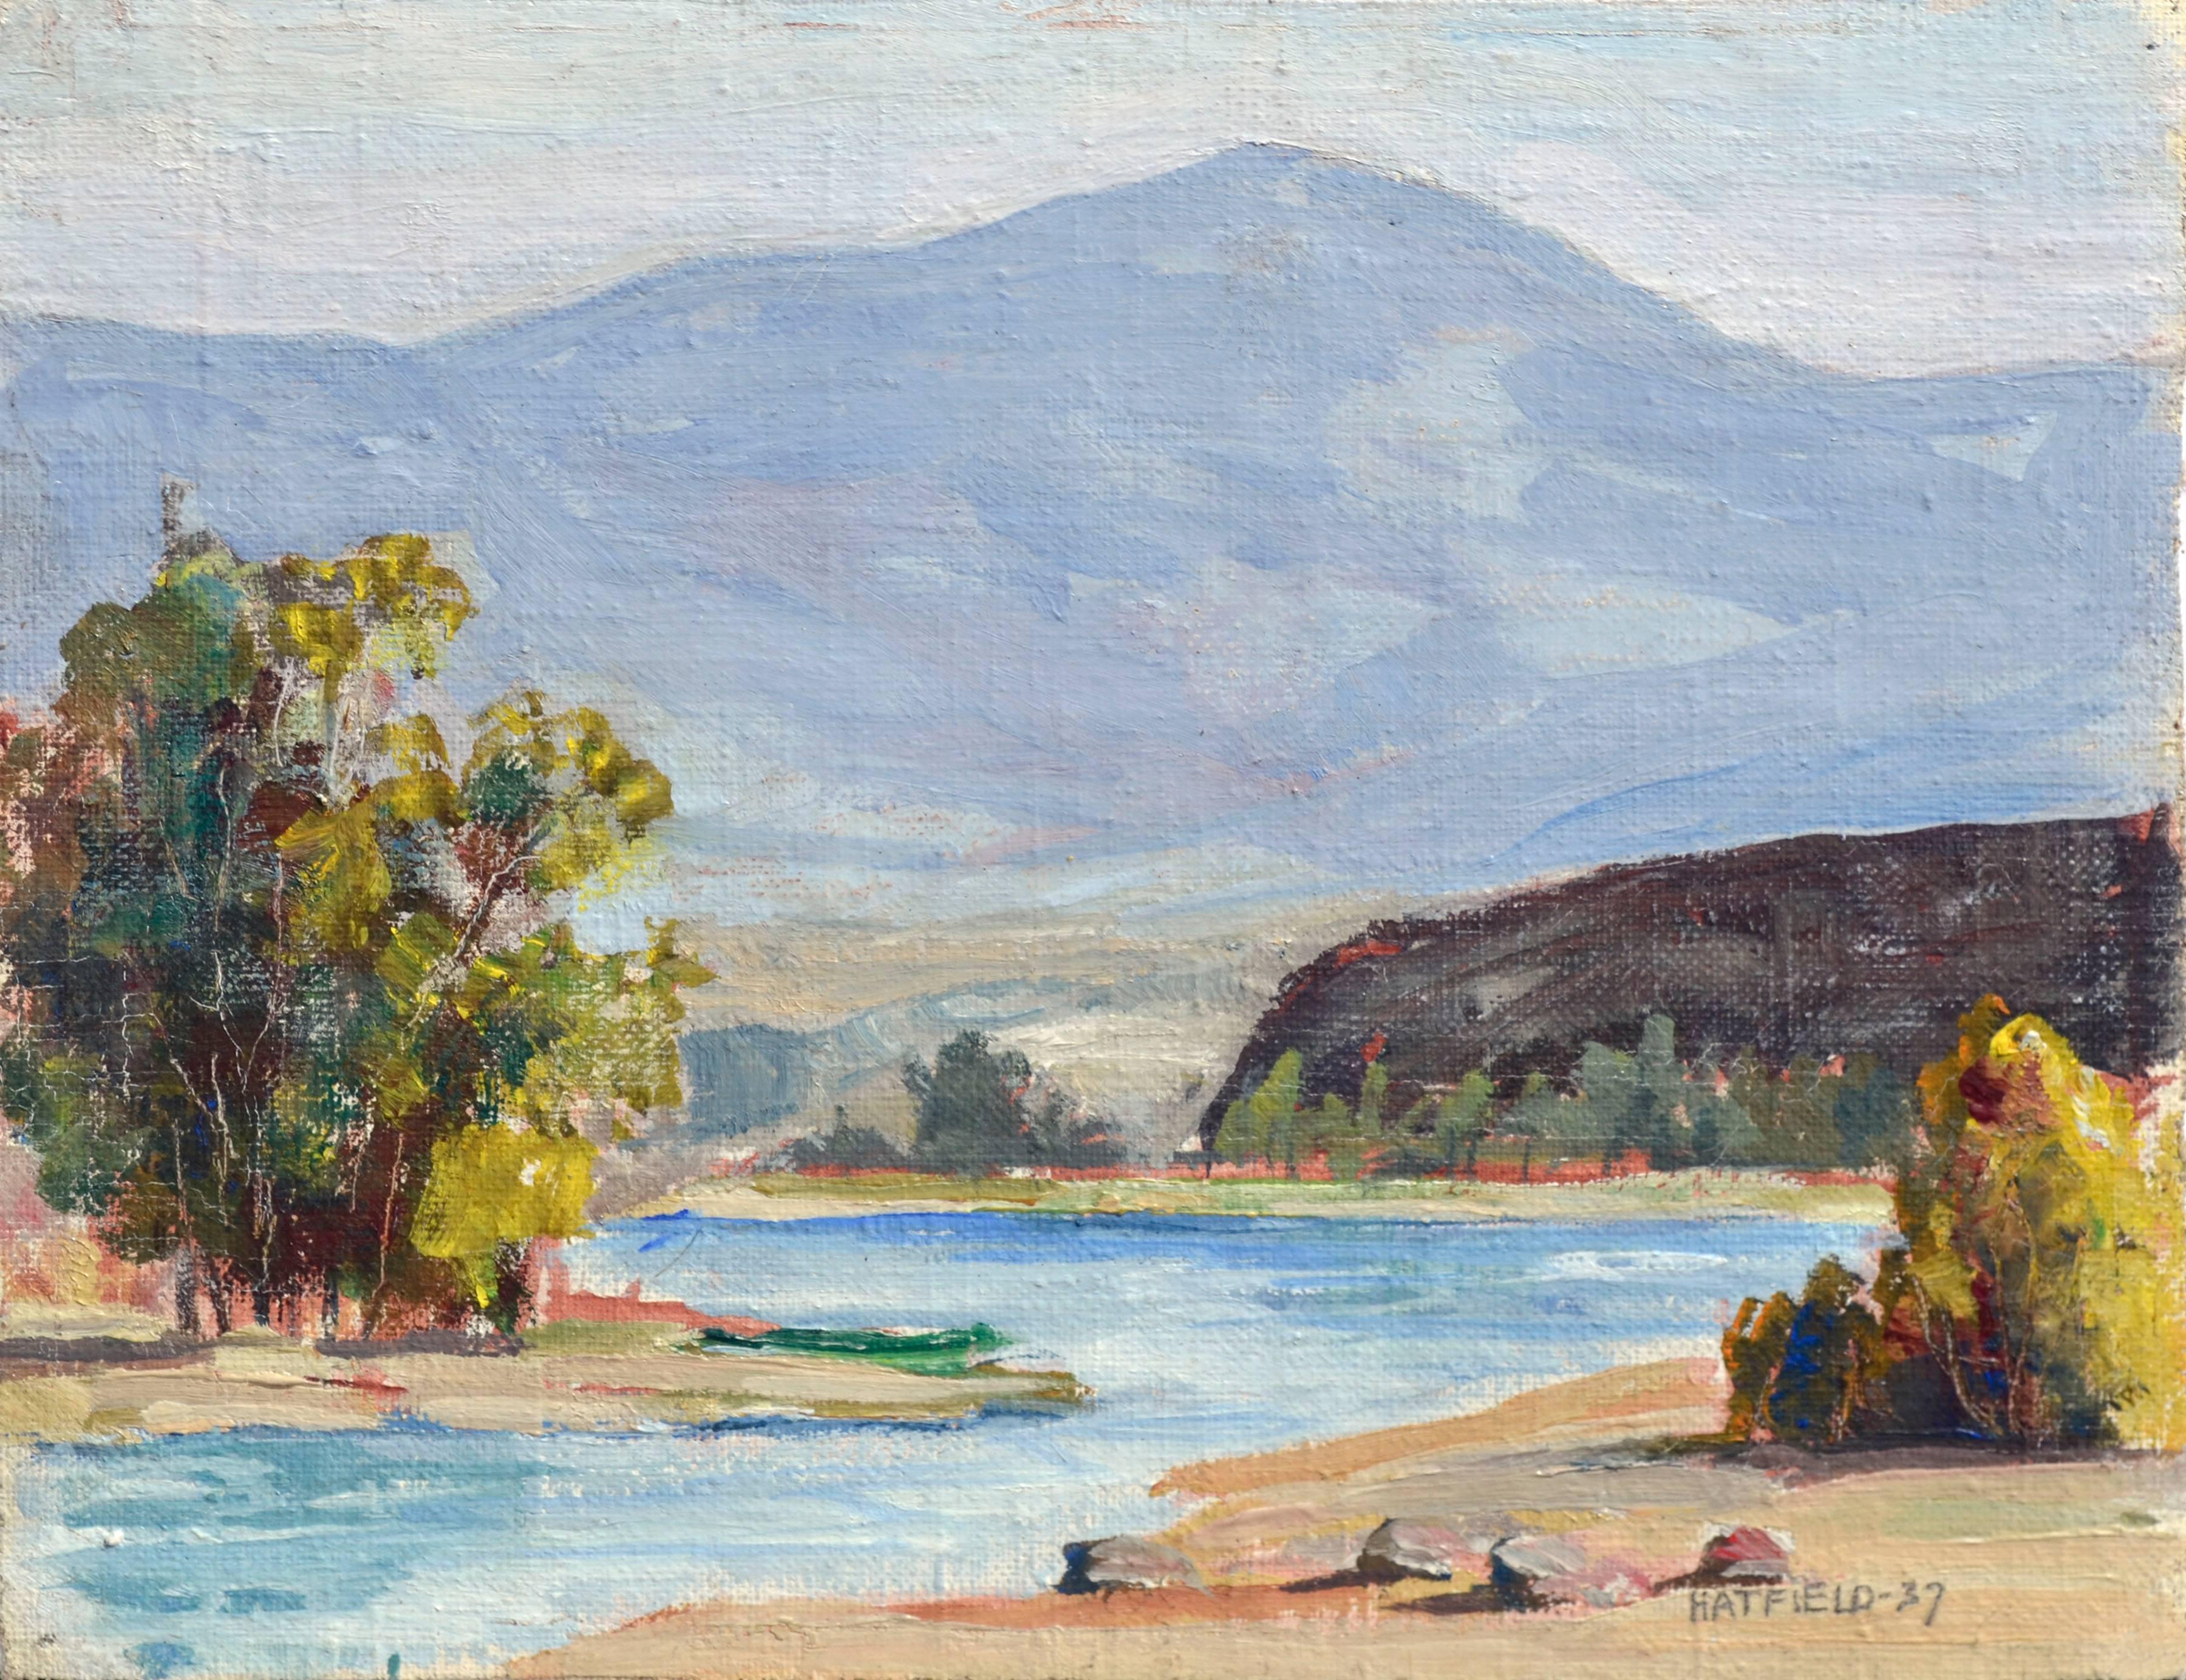 Paysage californien de petite taille Quiet Stream, paysage du milieu du siècle dernier, 1937  - Painting de Dalzell Hatfield